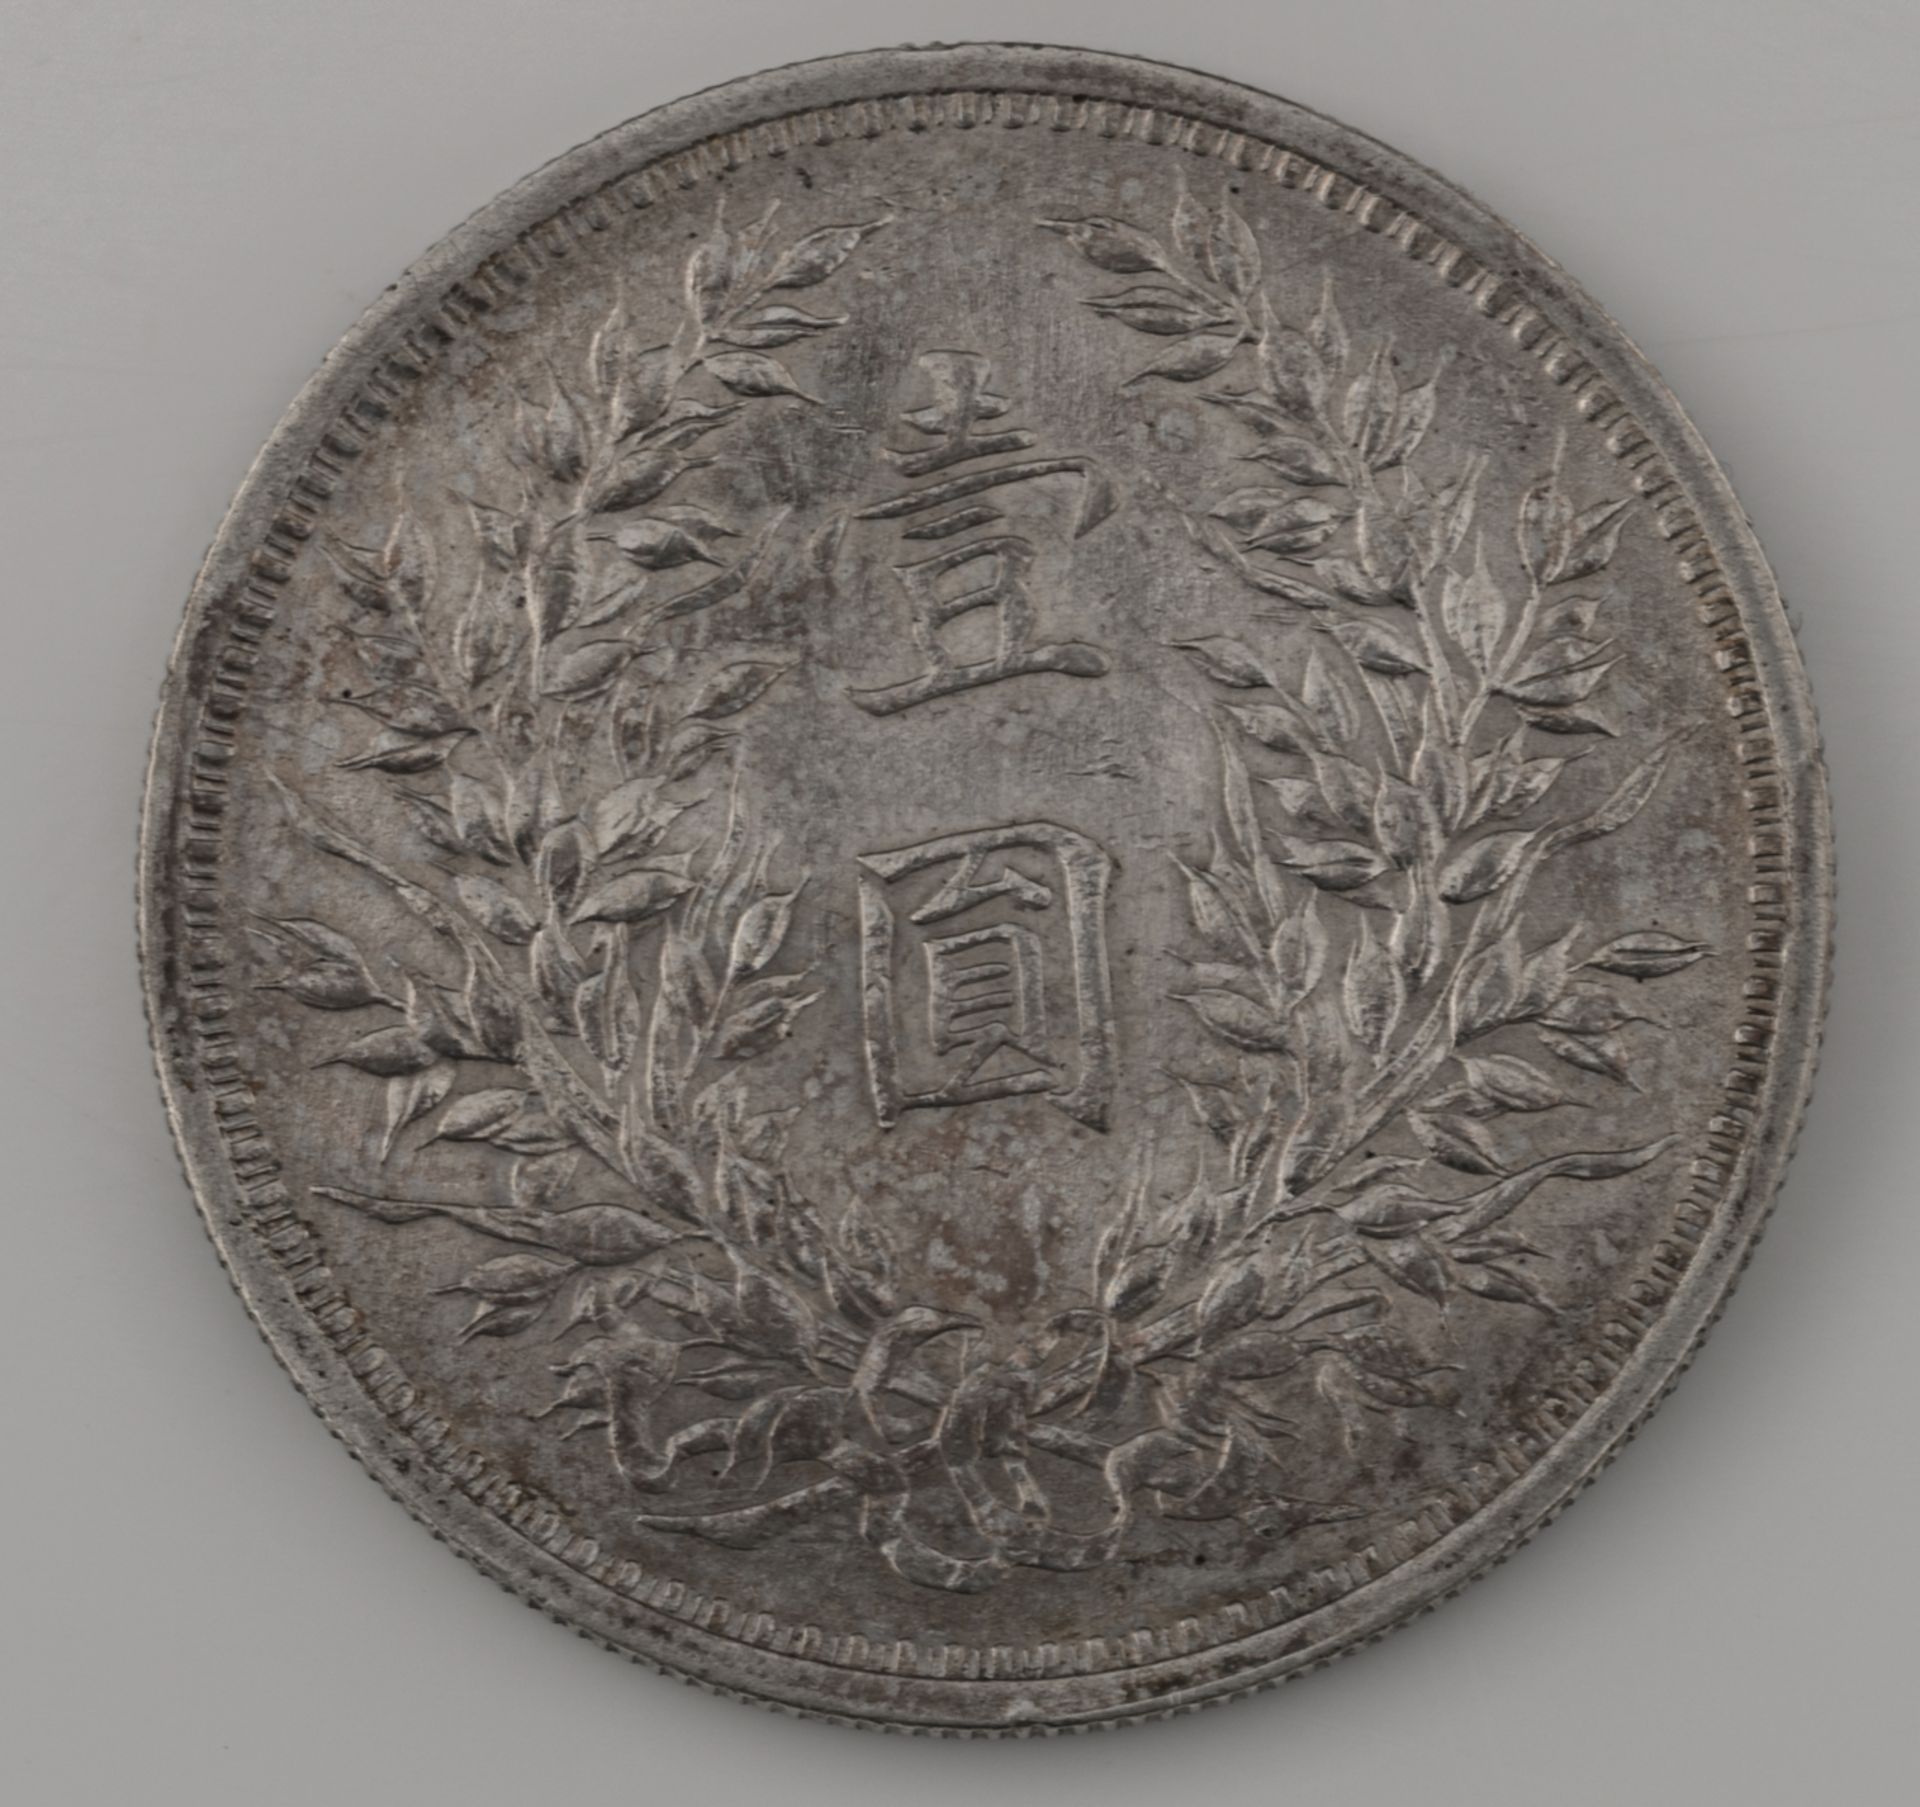 A 1914 Republic of China Yuan Shi Kai coin, with Yuan Shi Kai's portrait and ´Republic of China - Image 2 of 2